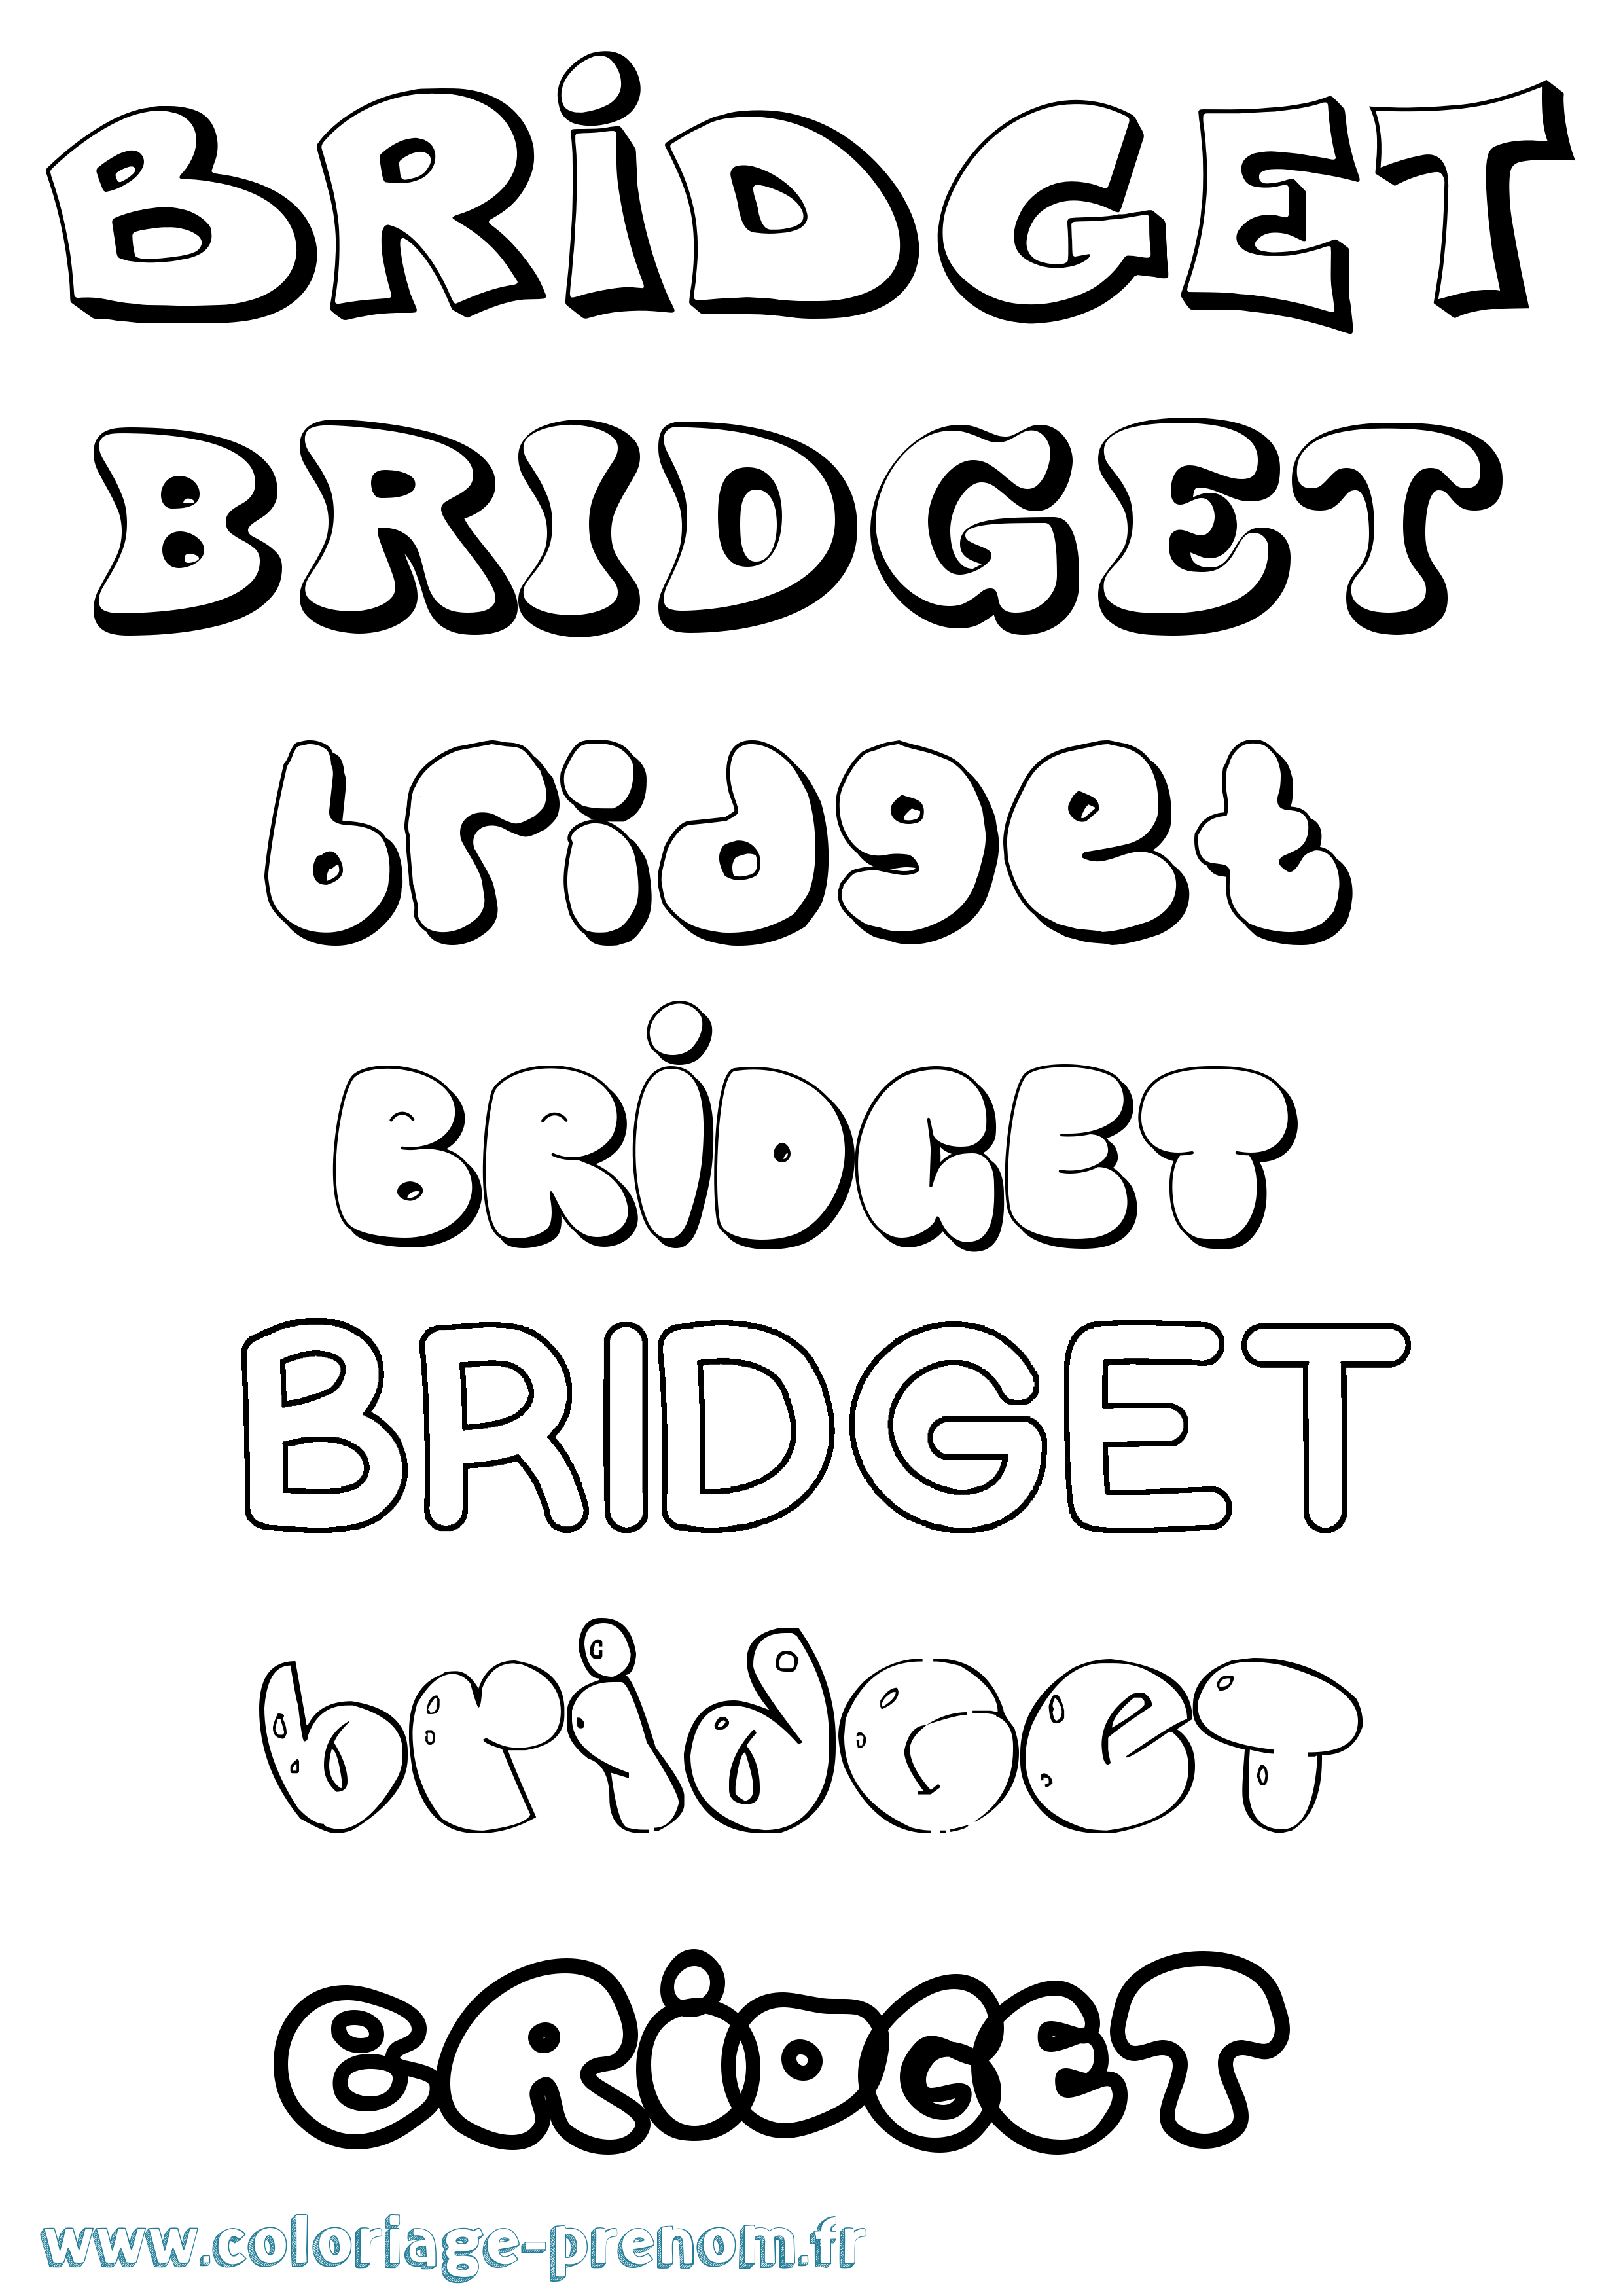 Coloriage prénom Bridget Bubble